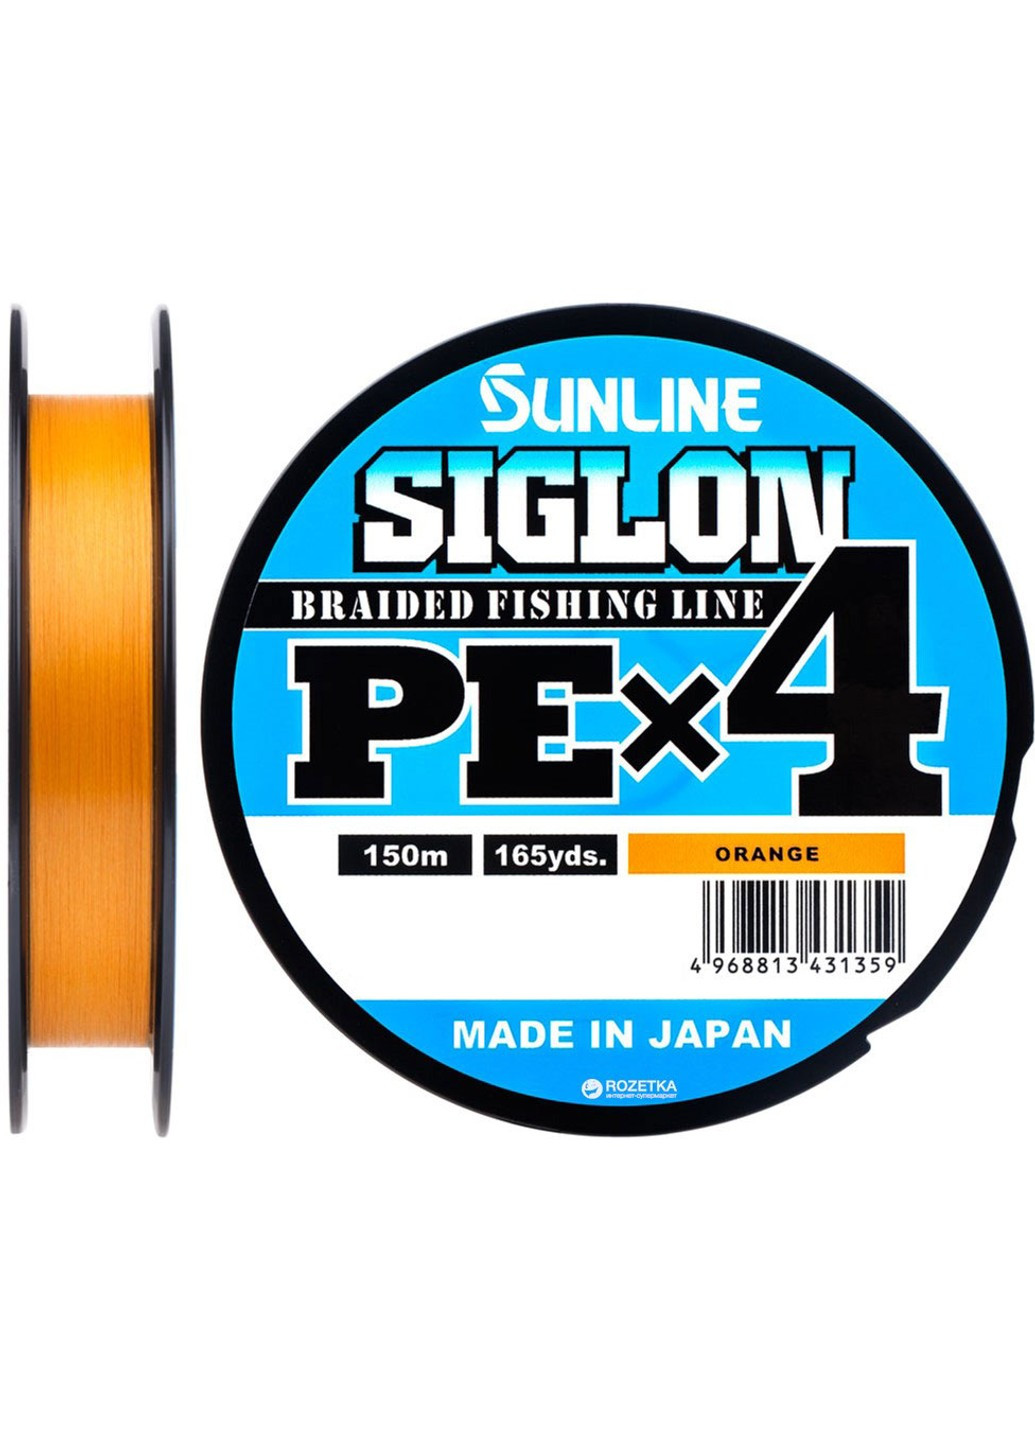 1658-09-26 Шнур Siglon PE х4 150m (оранж.) # 0.2 / 0.076mm 3lb / 1.6kg Sunline (252468201)